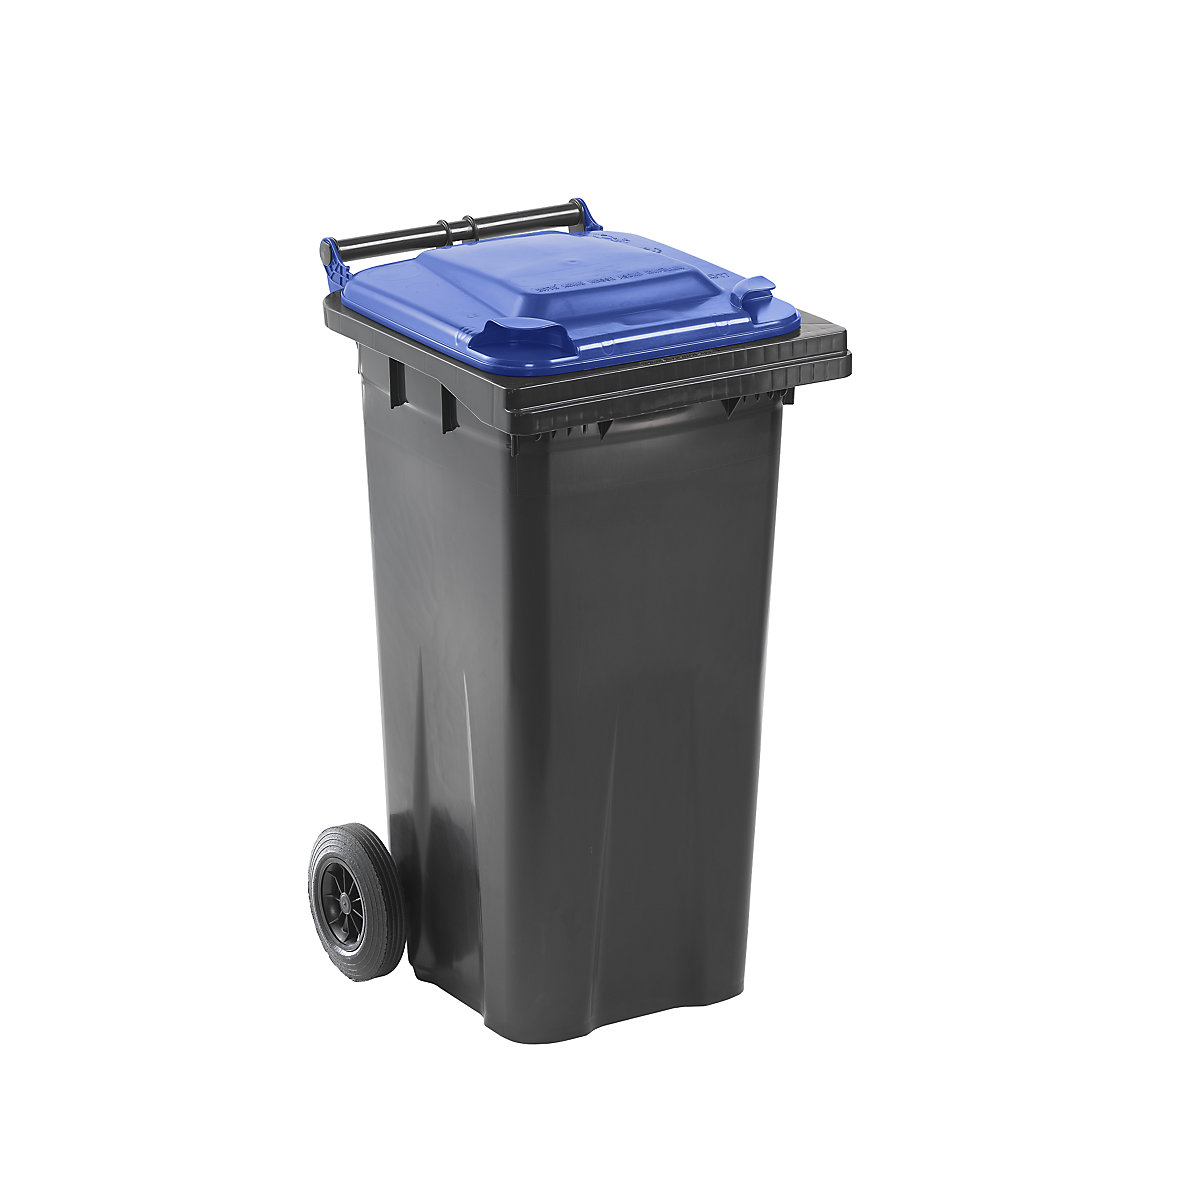 Contentor de lixo conforme a norma DIN EN 840